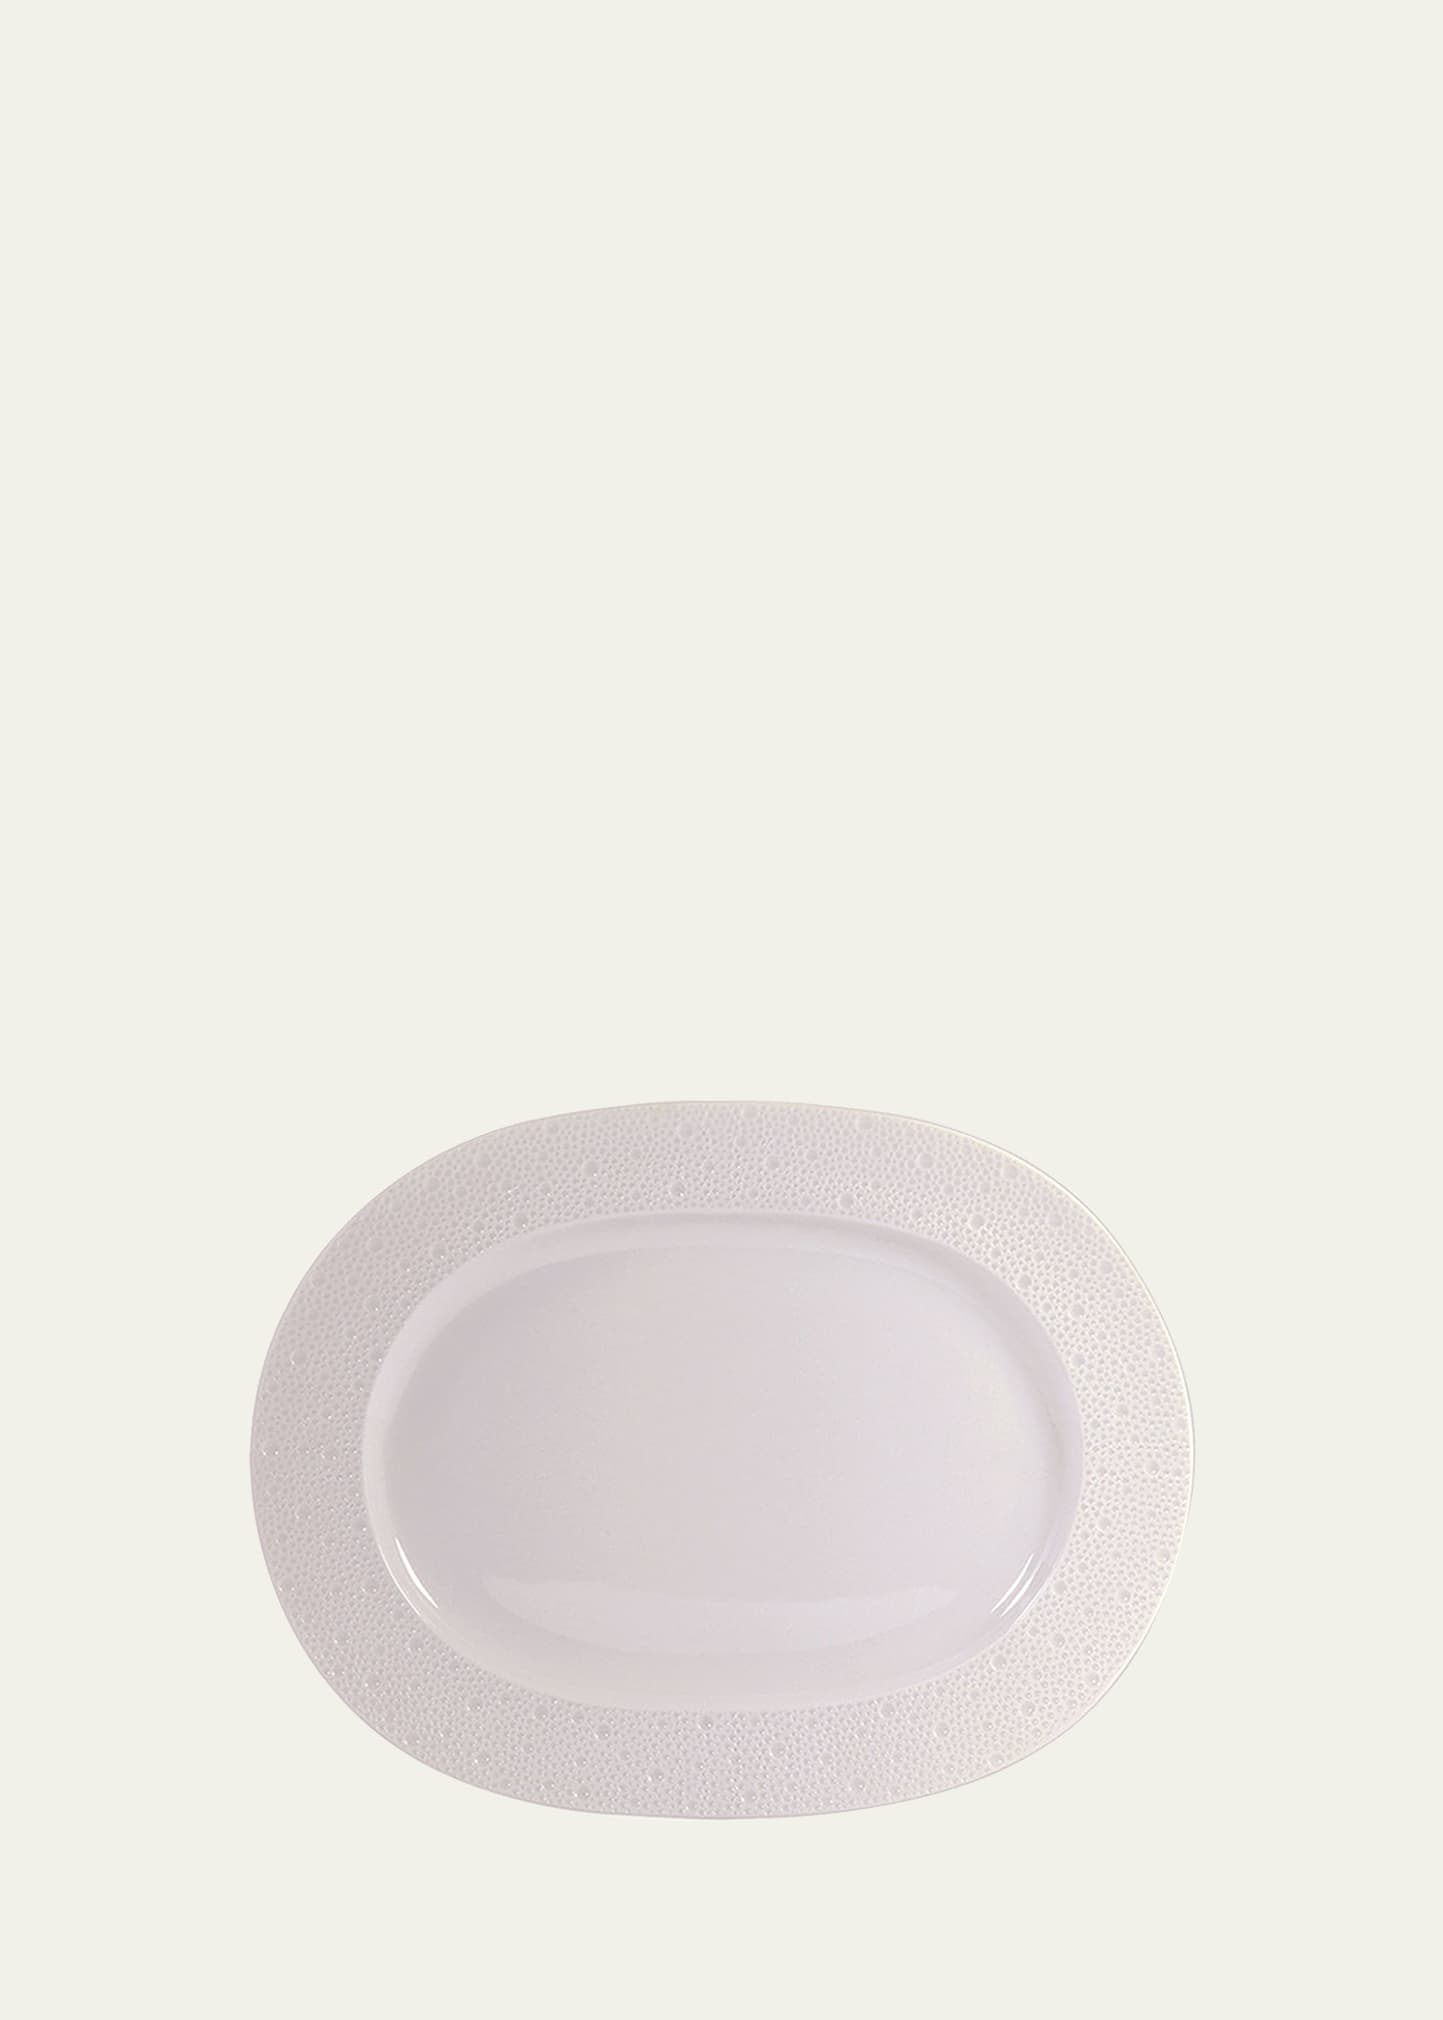 Ecume White Oval Platter, 12"